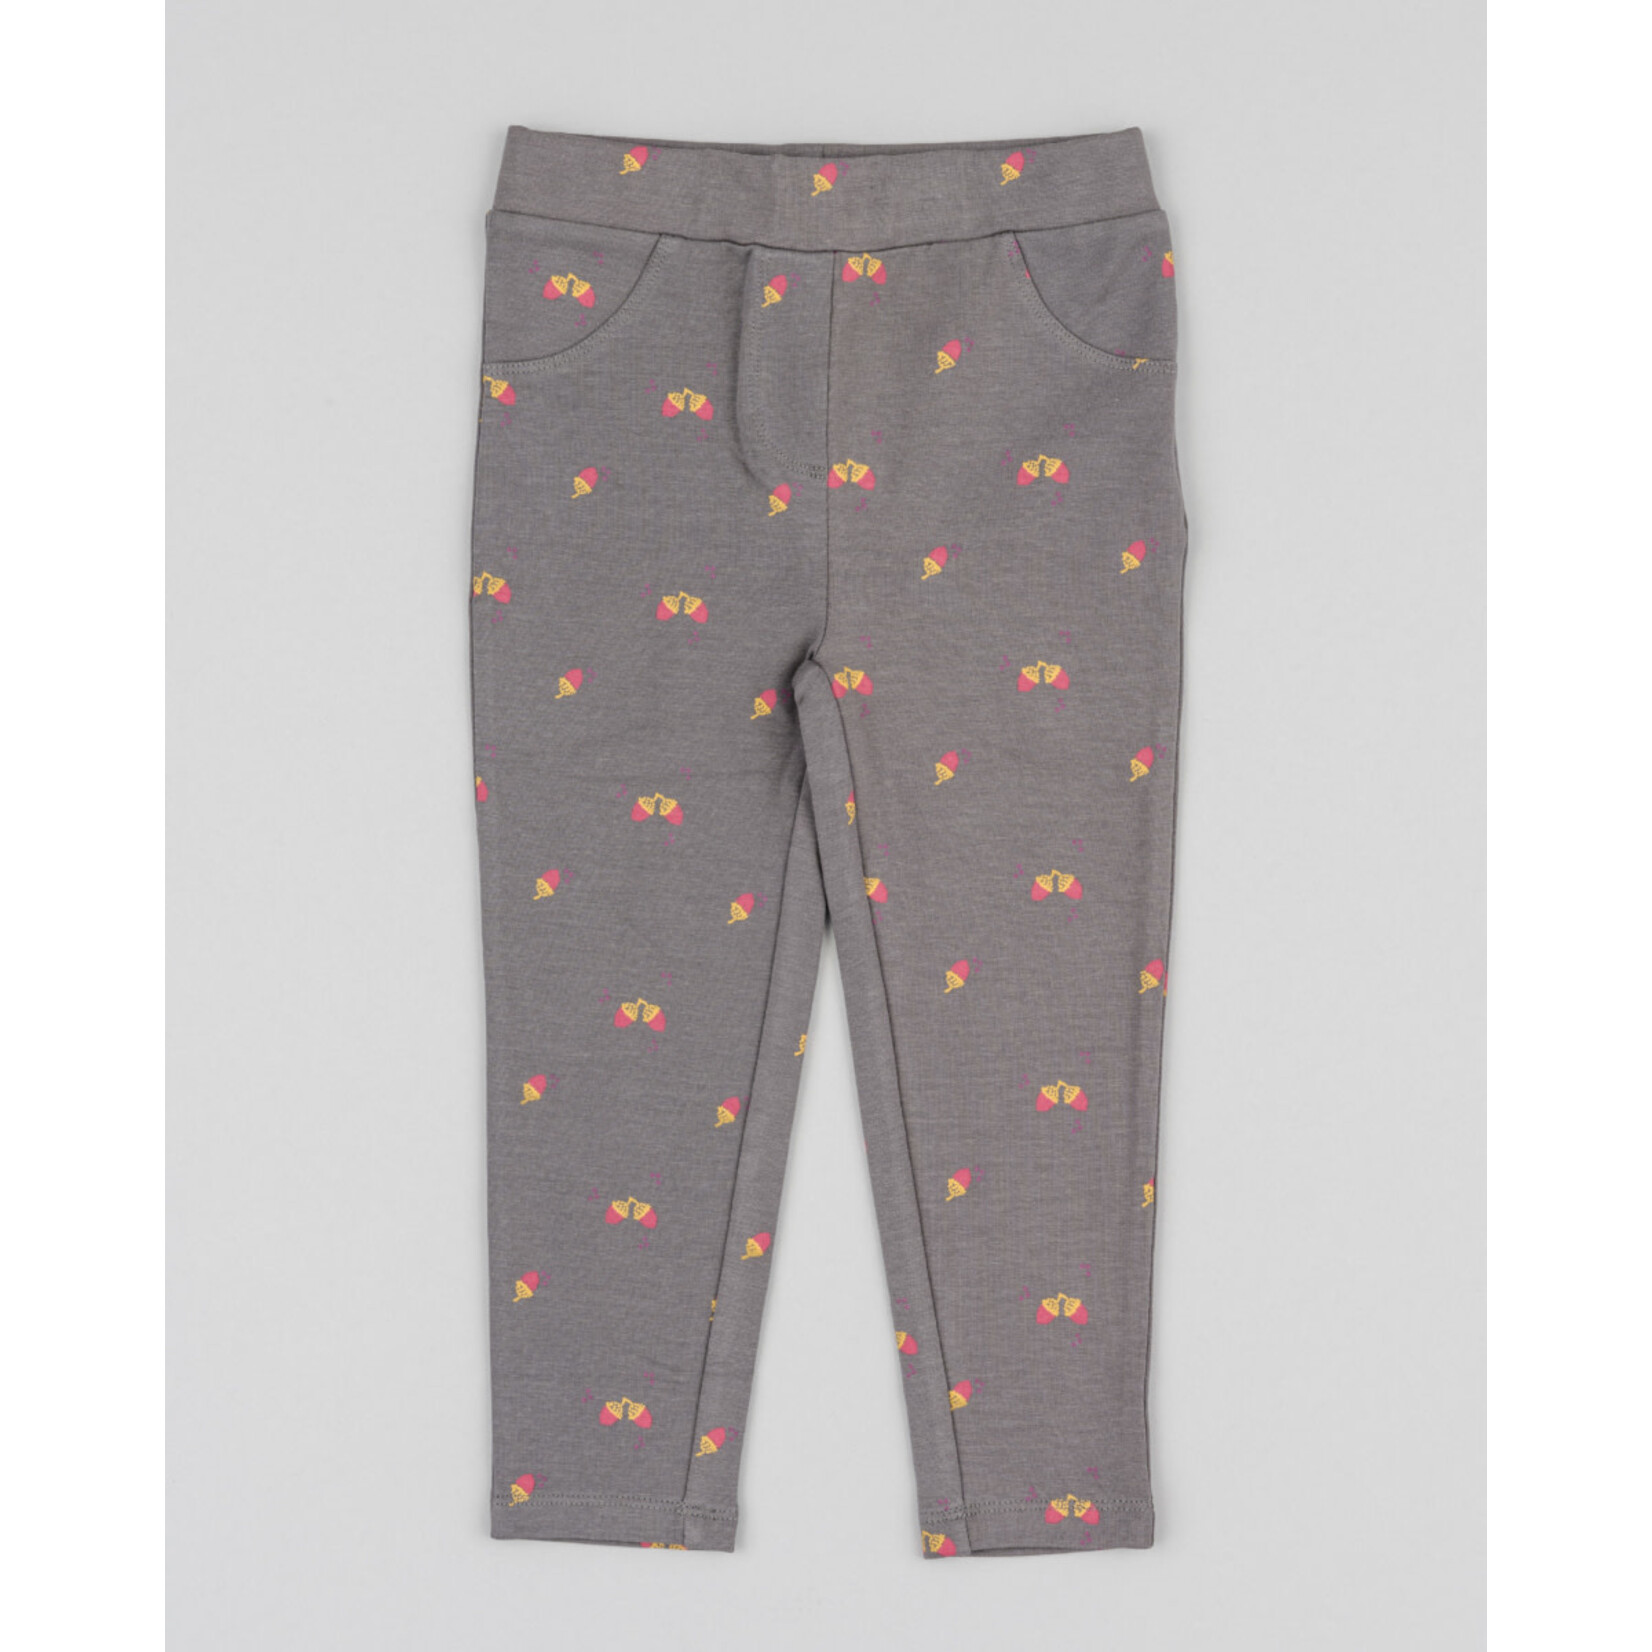 Losan LOSAN - Pantalon souple / Legging gris taupe avec imprimé de glands orange et roses